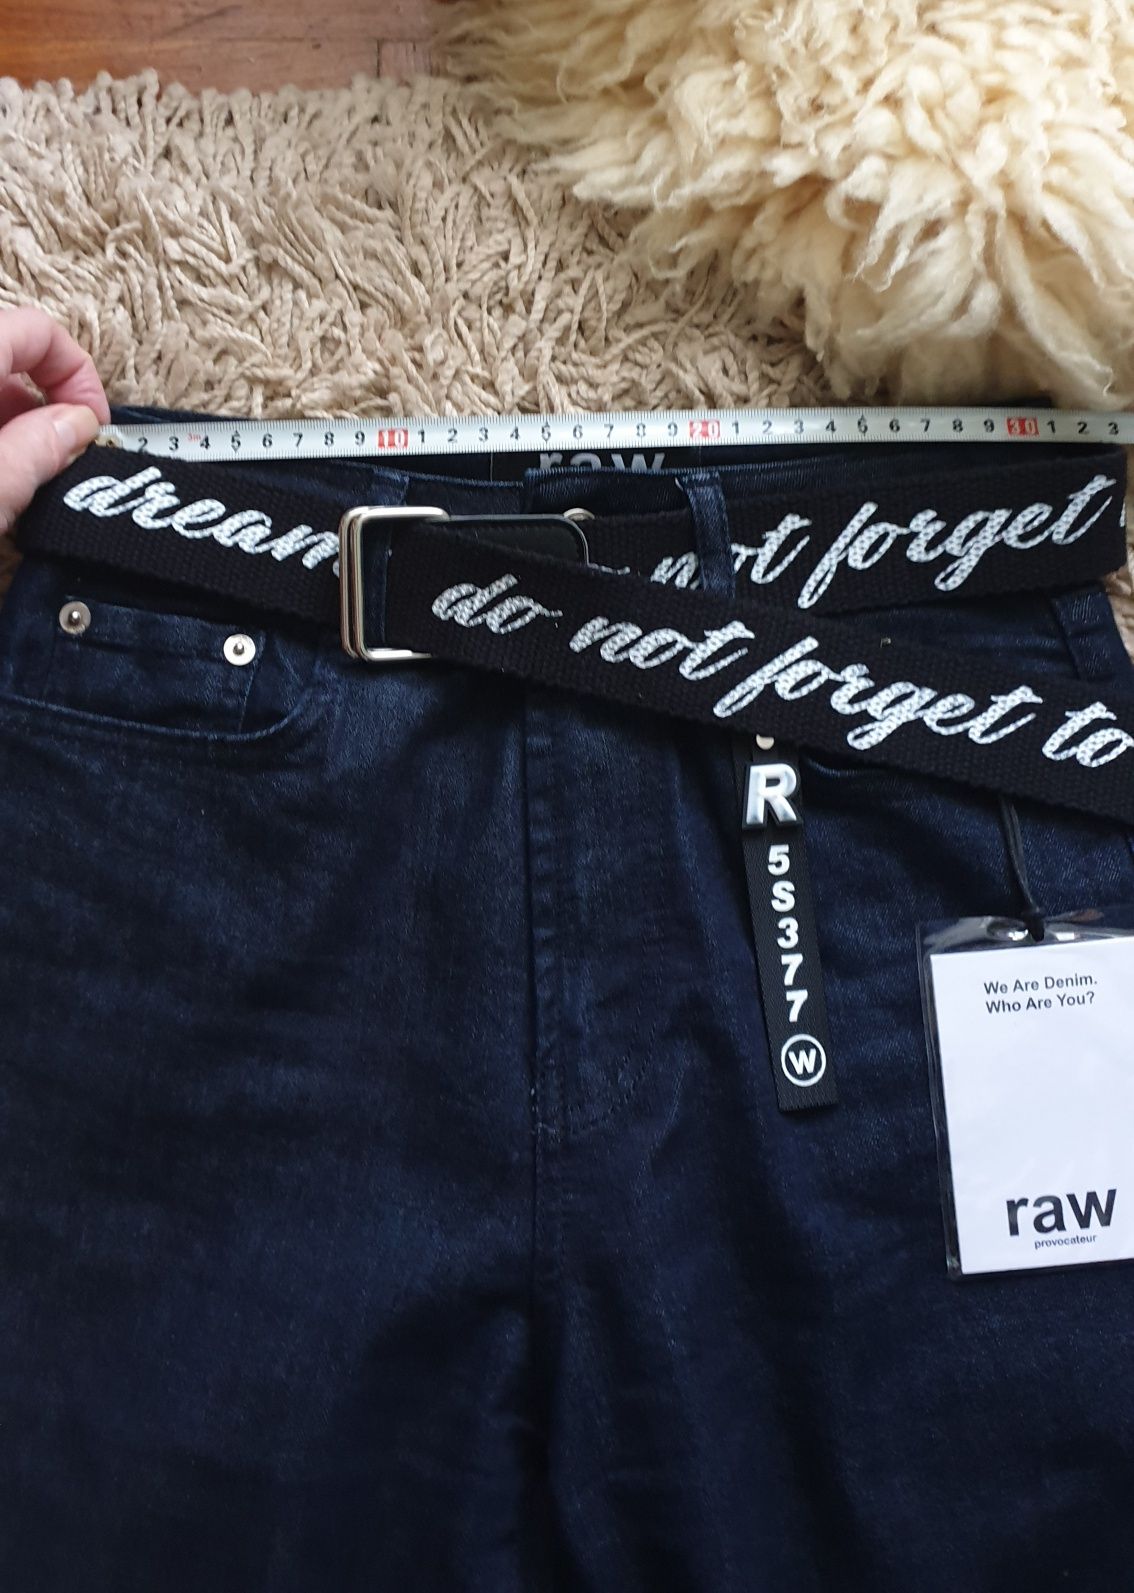 Raw provocator джинсы